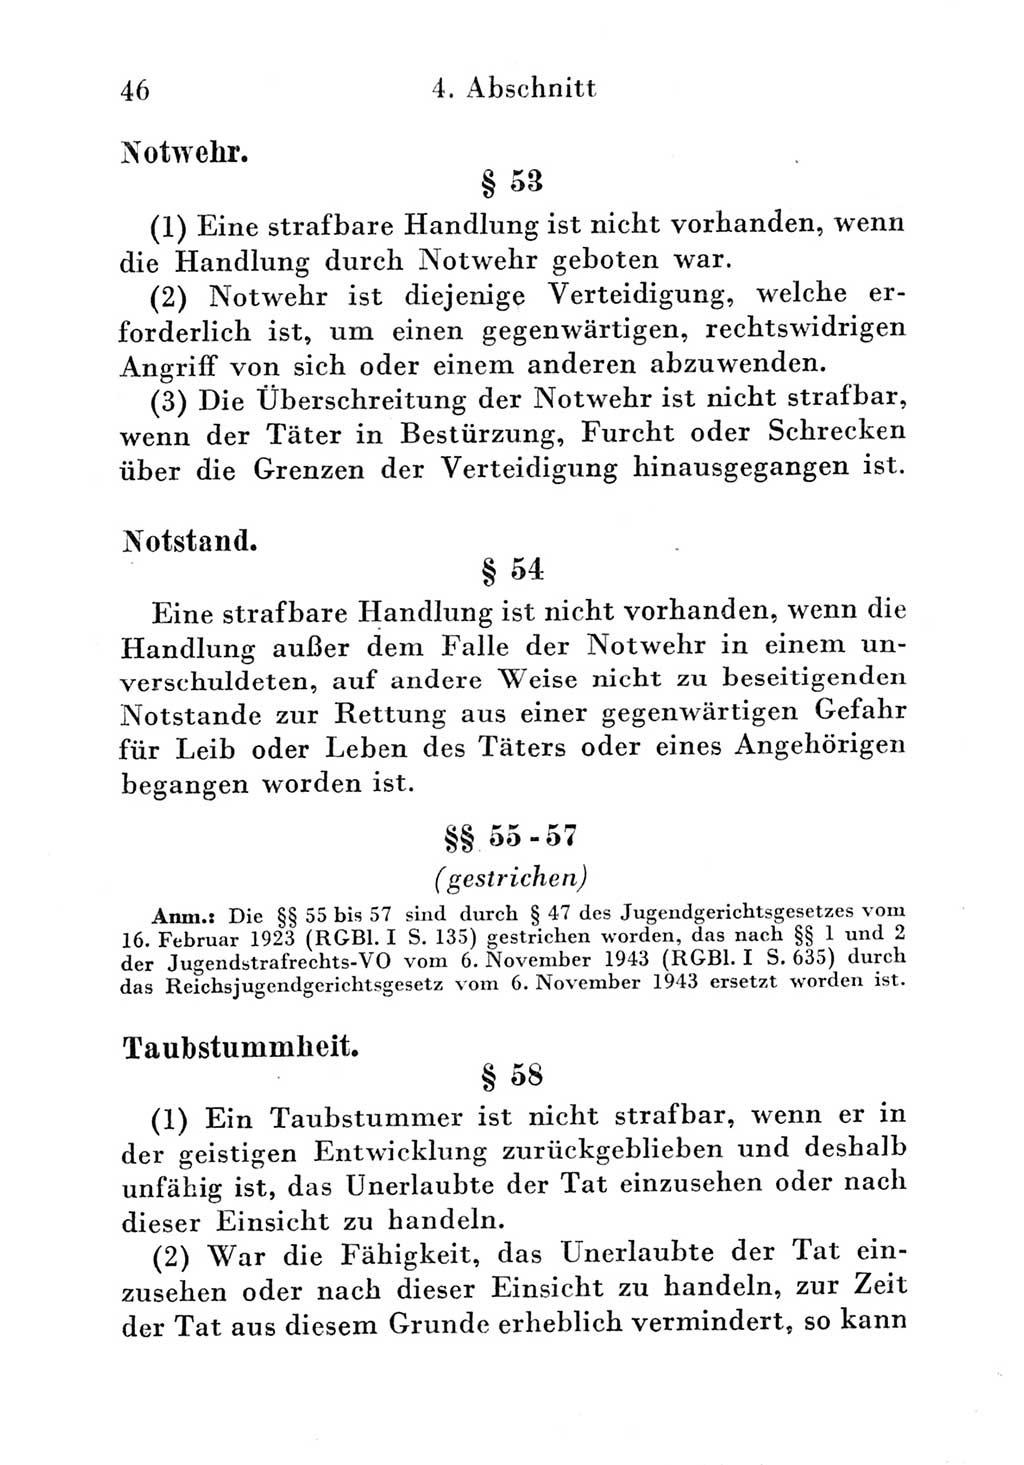 Strafgesetzbuch (StGB) und andere Strafgesetze [Deutsche Demokratische Republik (DDR)] 1951, Seite 46 (StGB Strafges. DDR 1951, S. 46)